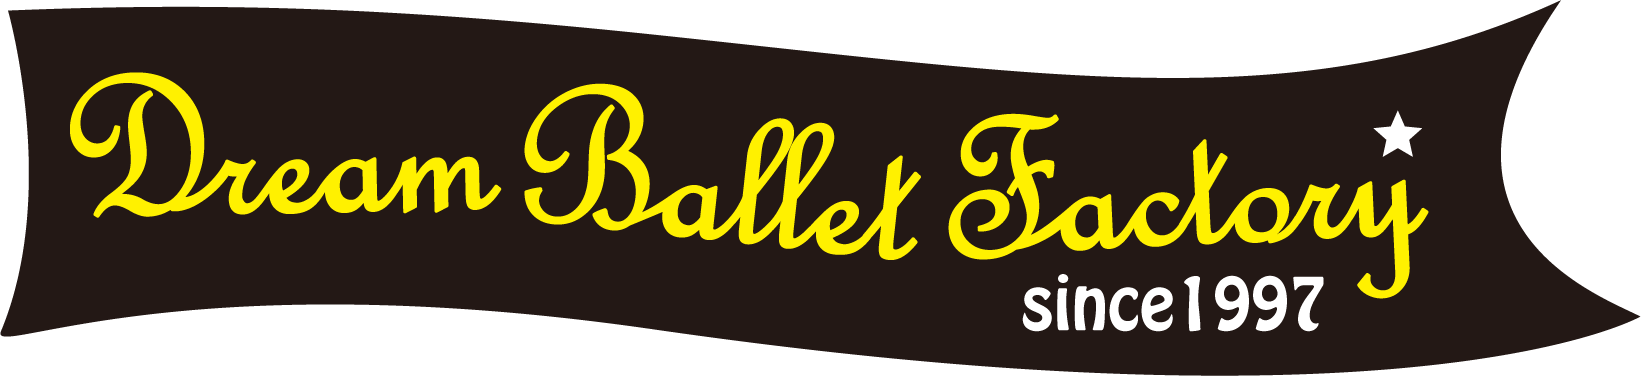 Dream Ballet Factory